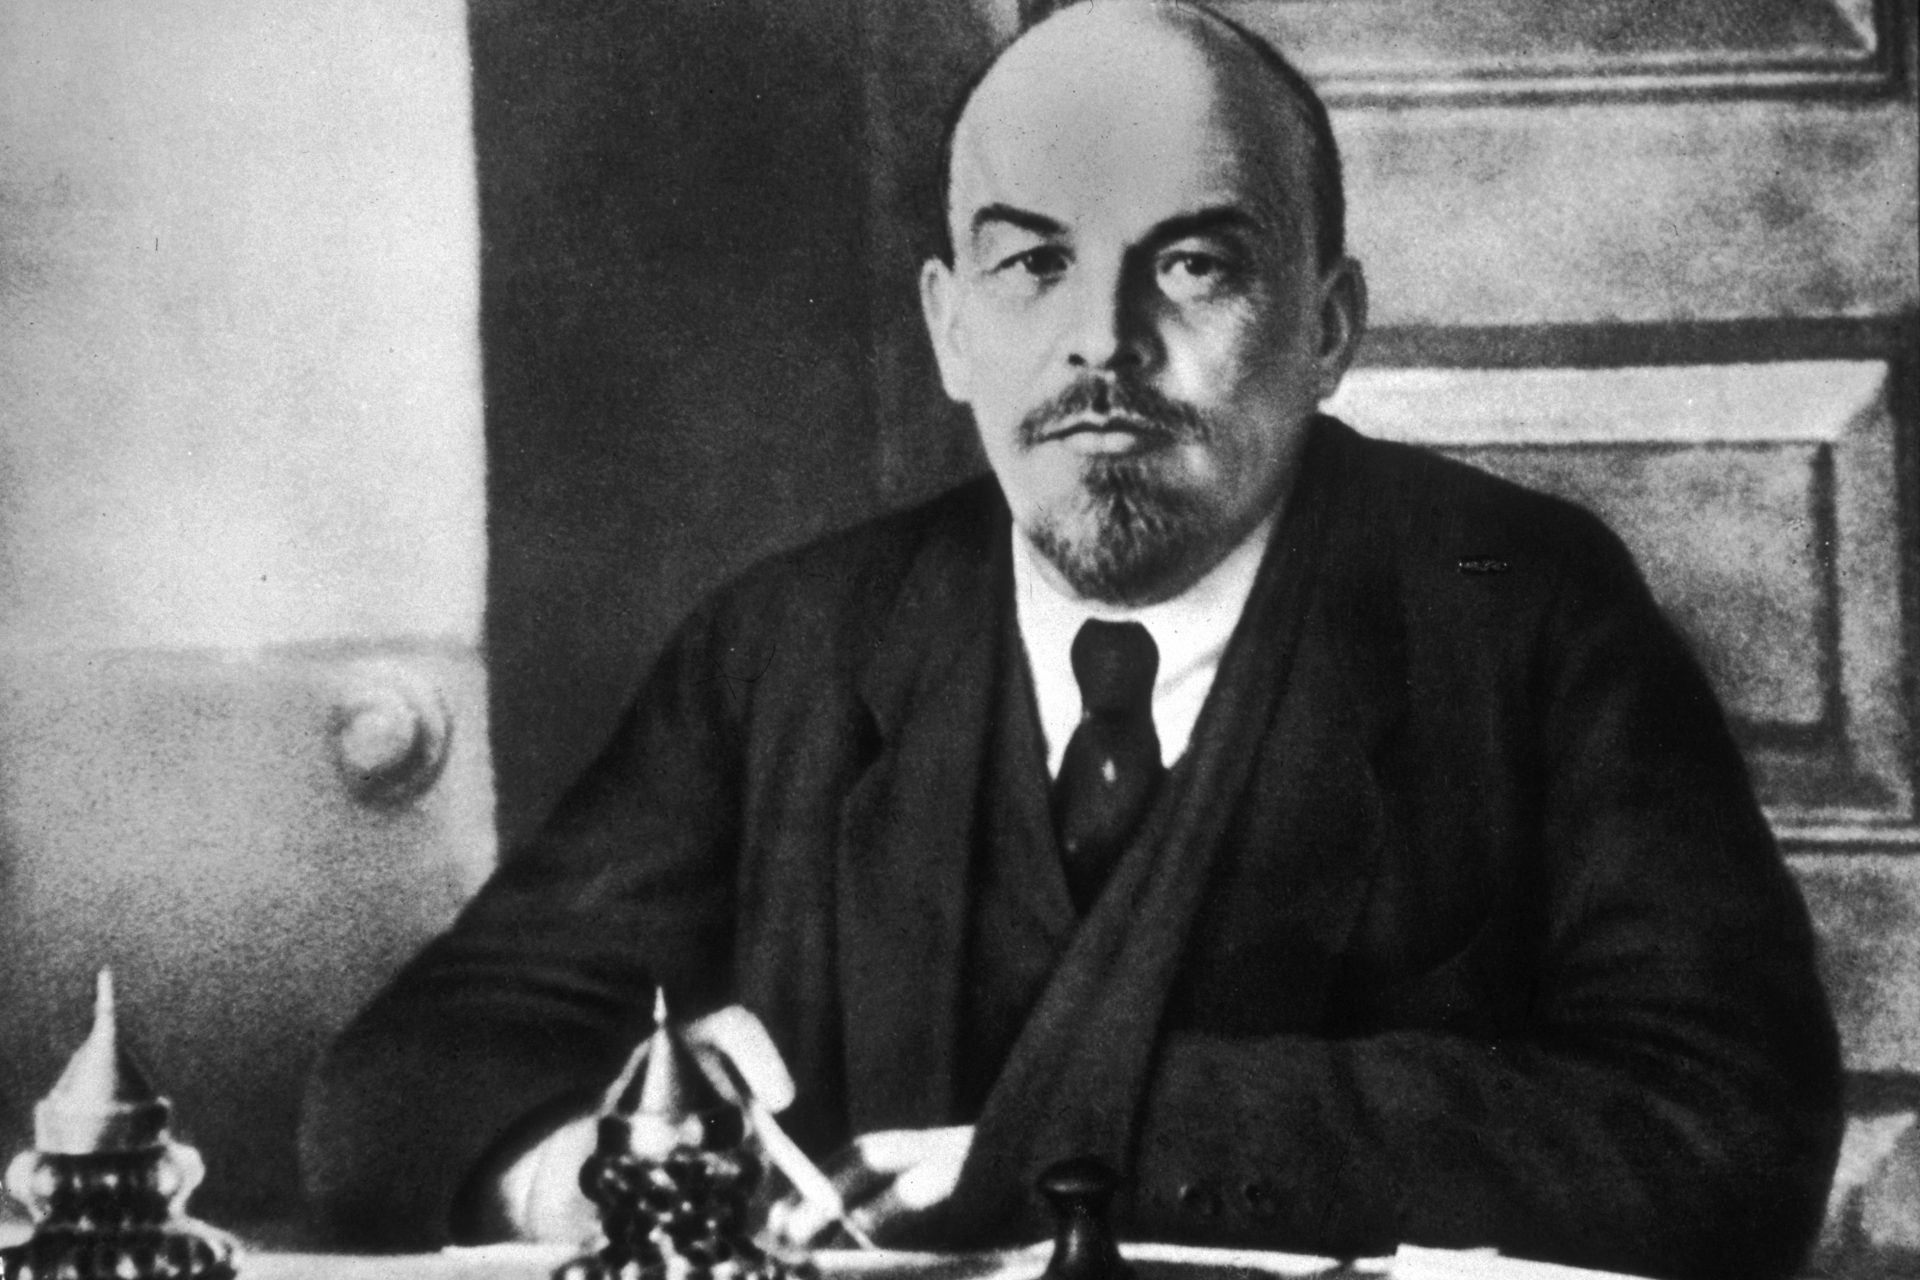 La momia de Lenin